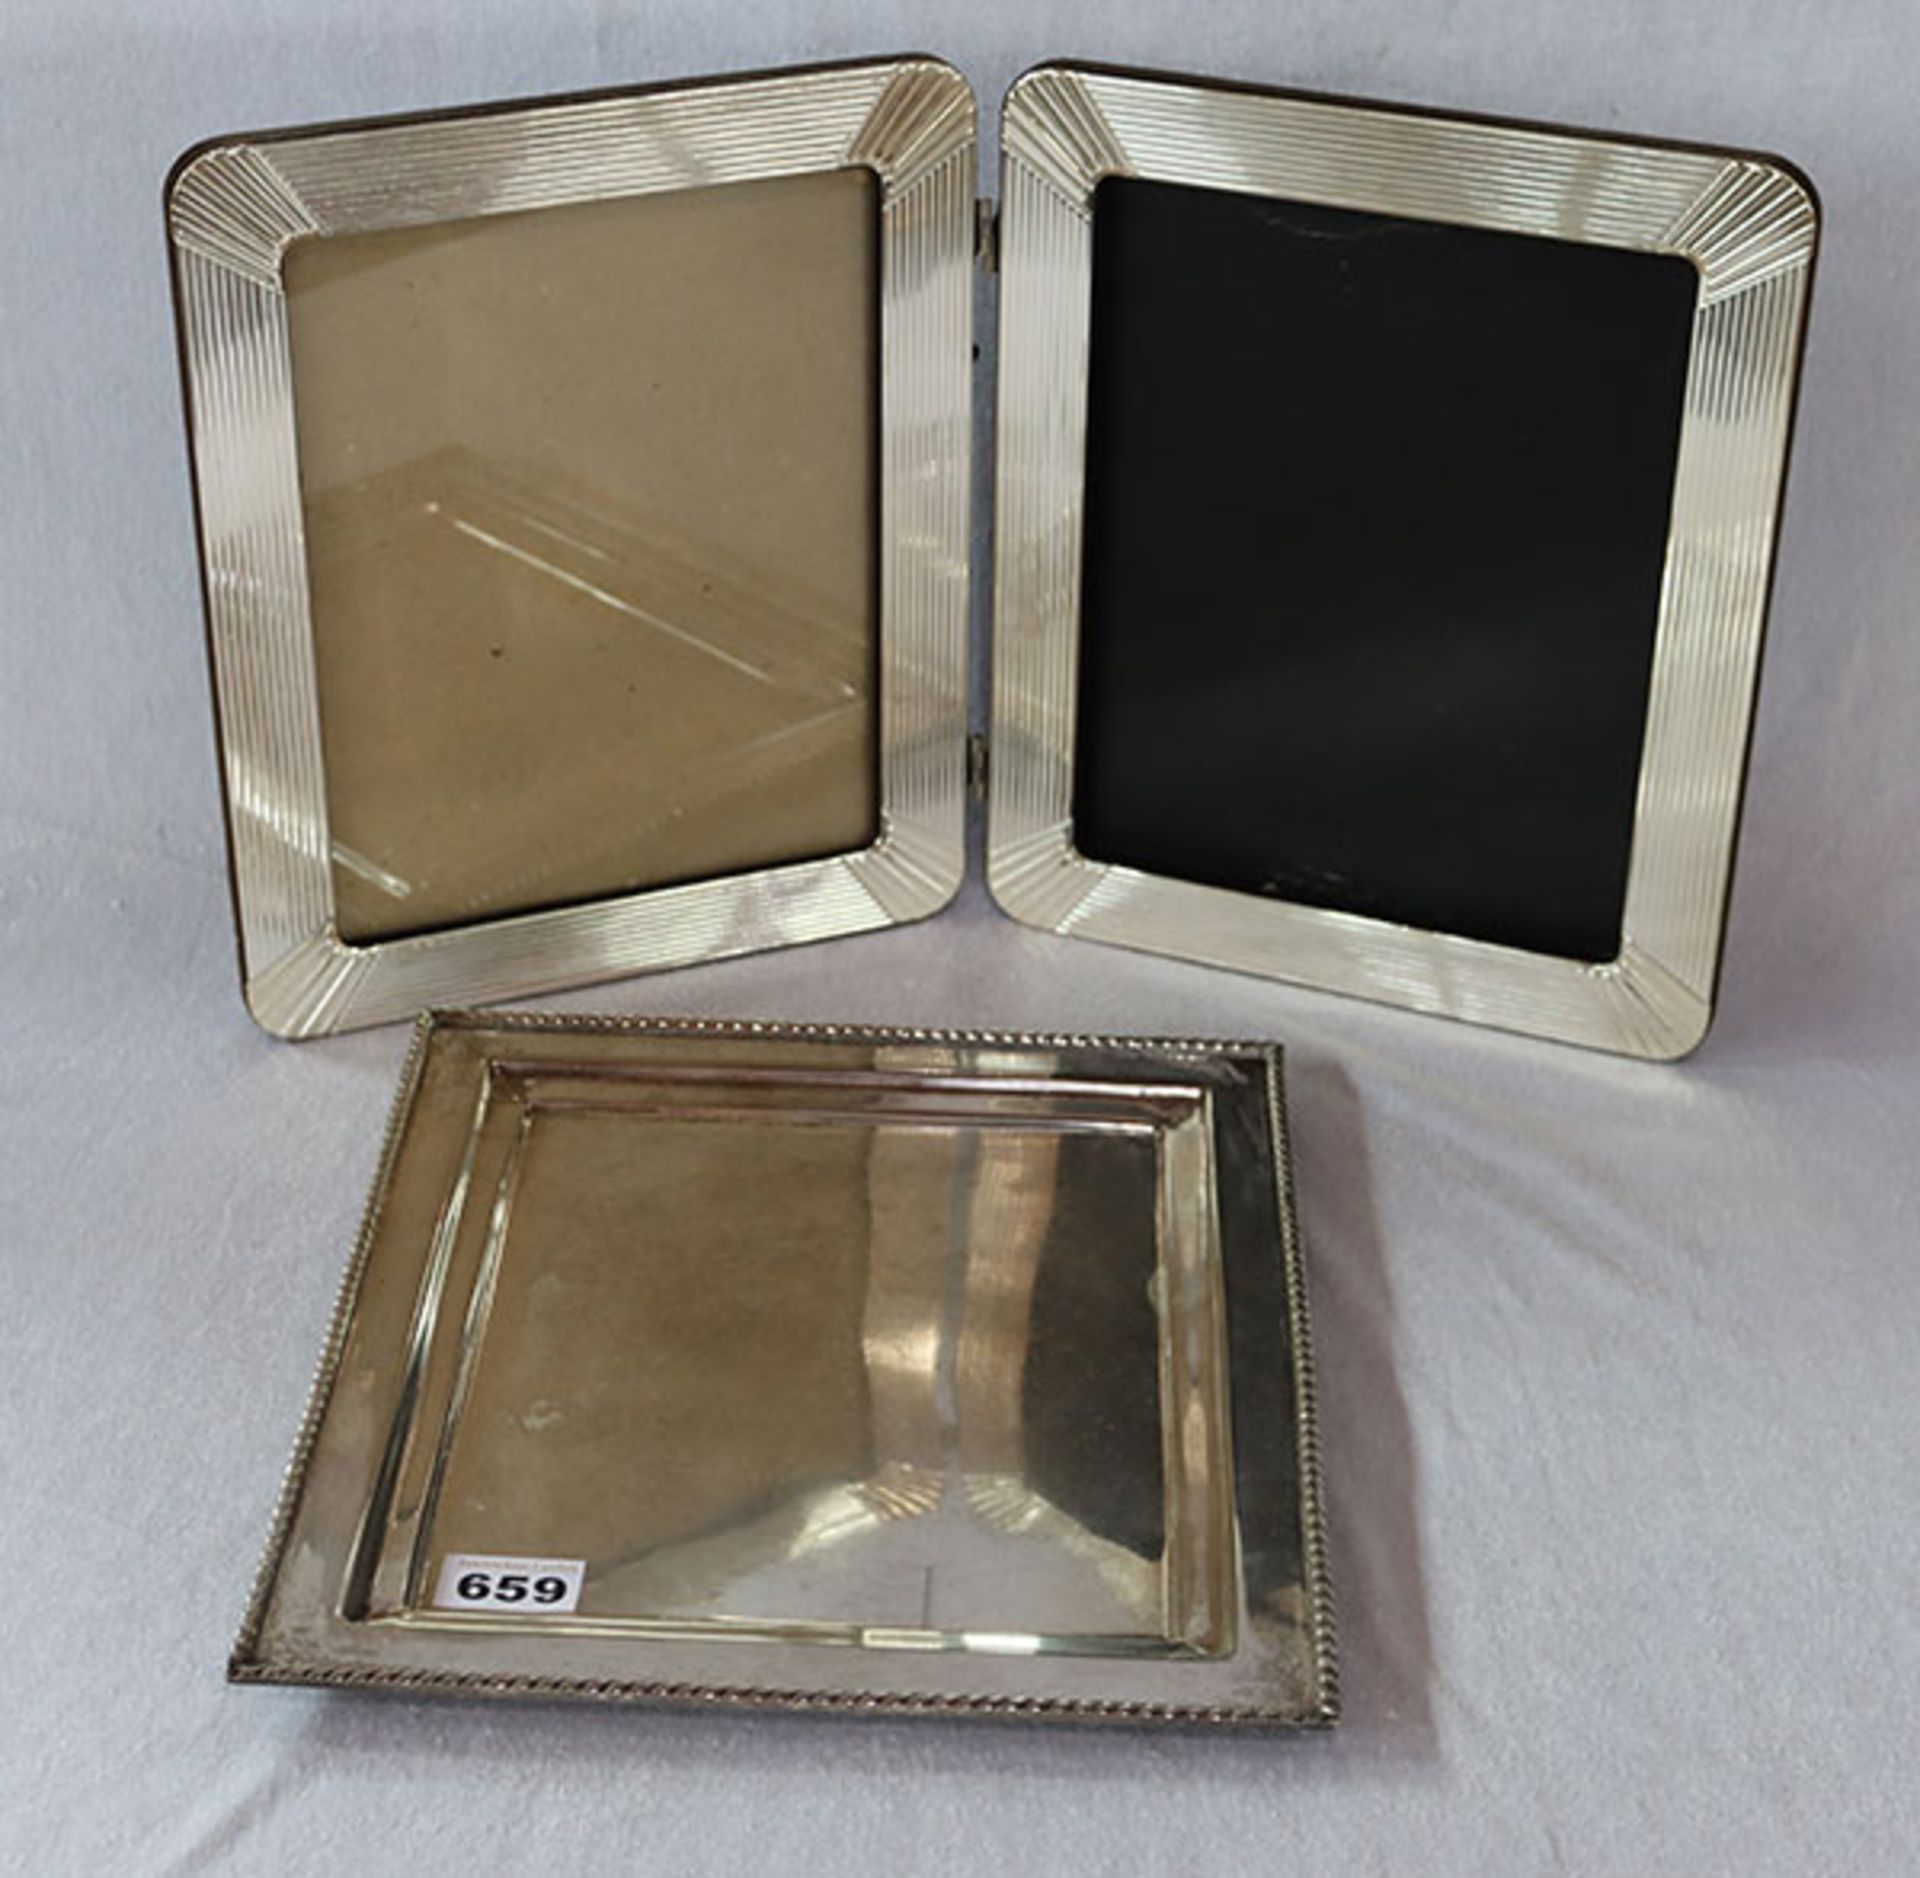 Metall Tablett in eckiger Form mit Kordelrand, 32 cm x 28 cm, und Doppel-Fotorahmen, H 31 cm,